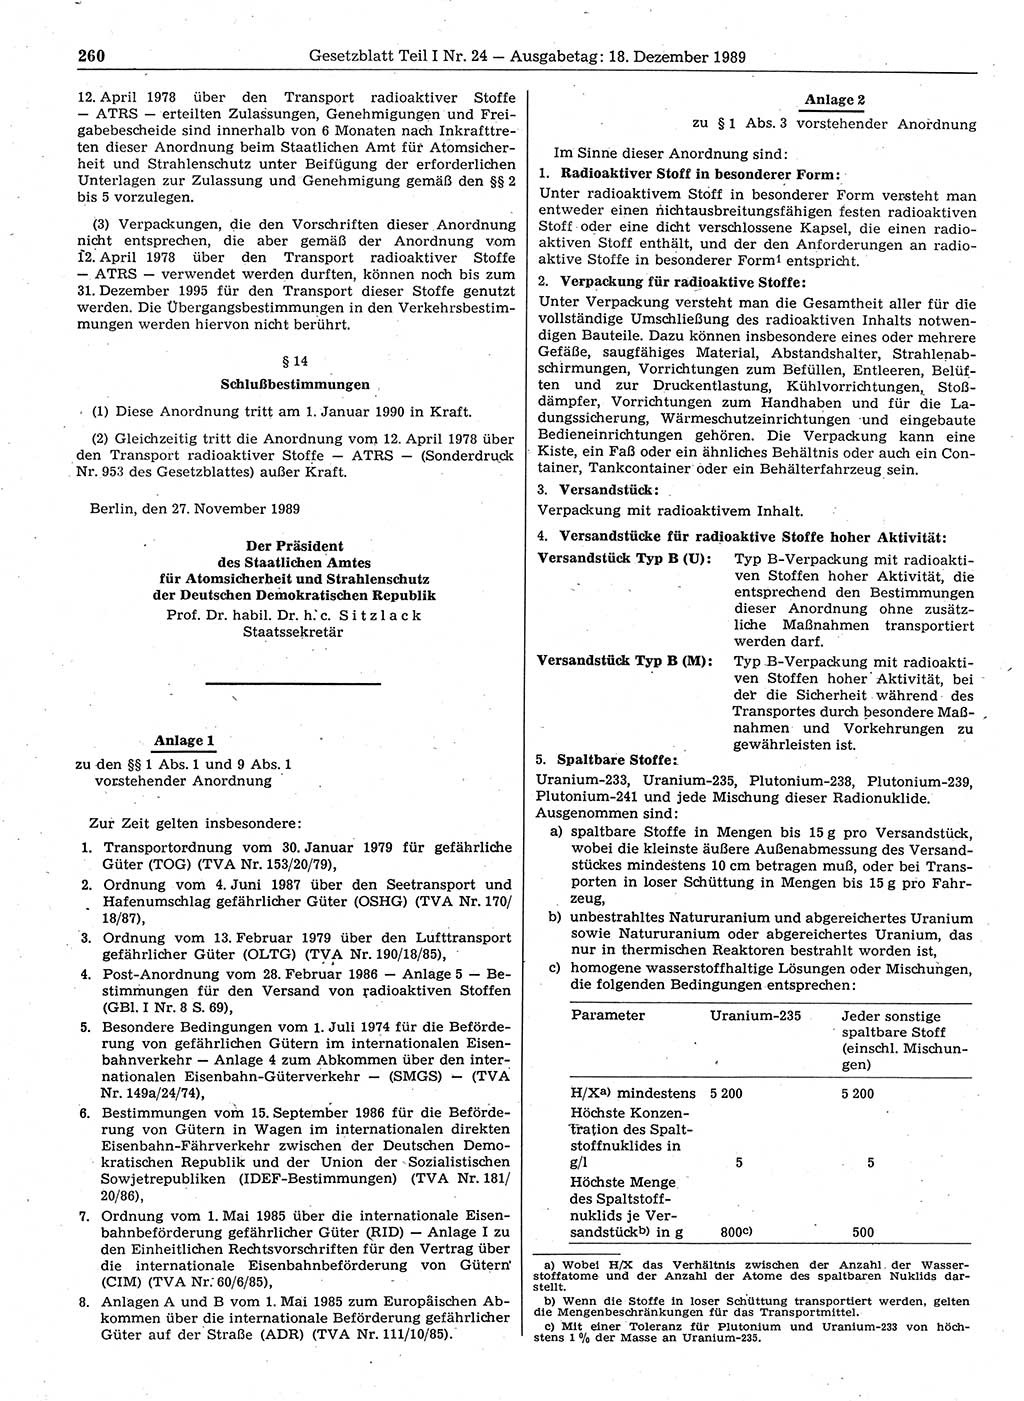 Gesetzblatt (GBl.) der Deutschen Demokratischen Republik (DDR) Teil Ⅰ 1989, Seite 260 (GBl. DDR Ⅰ 1989, S. 260)